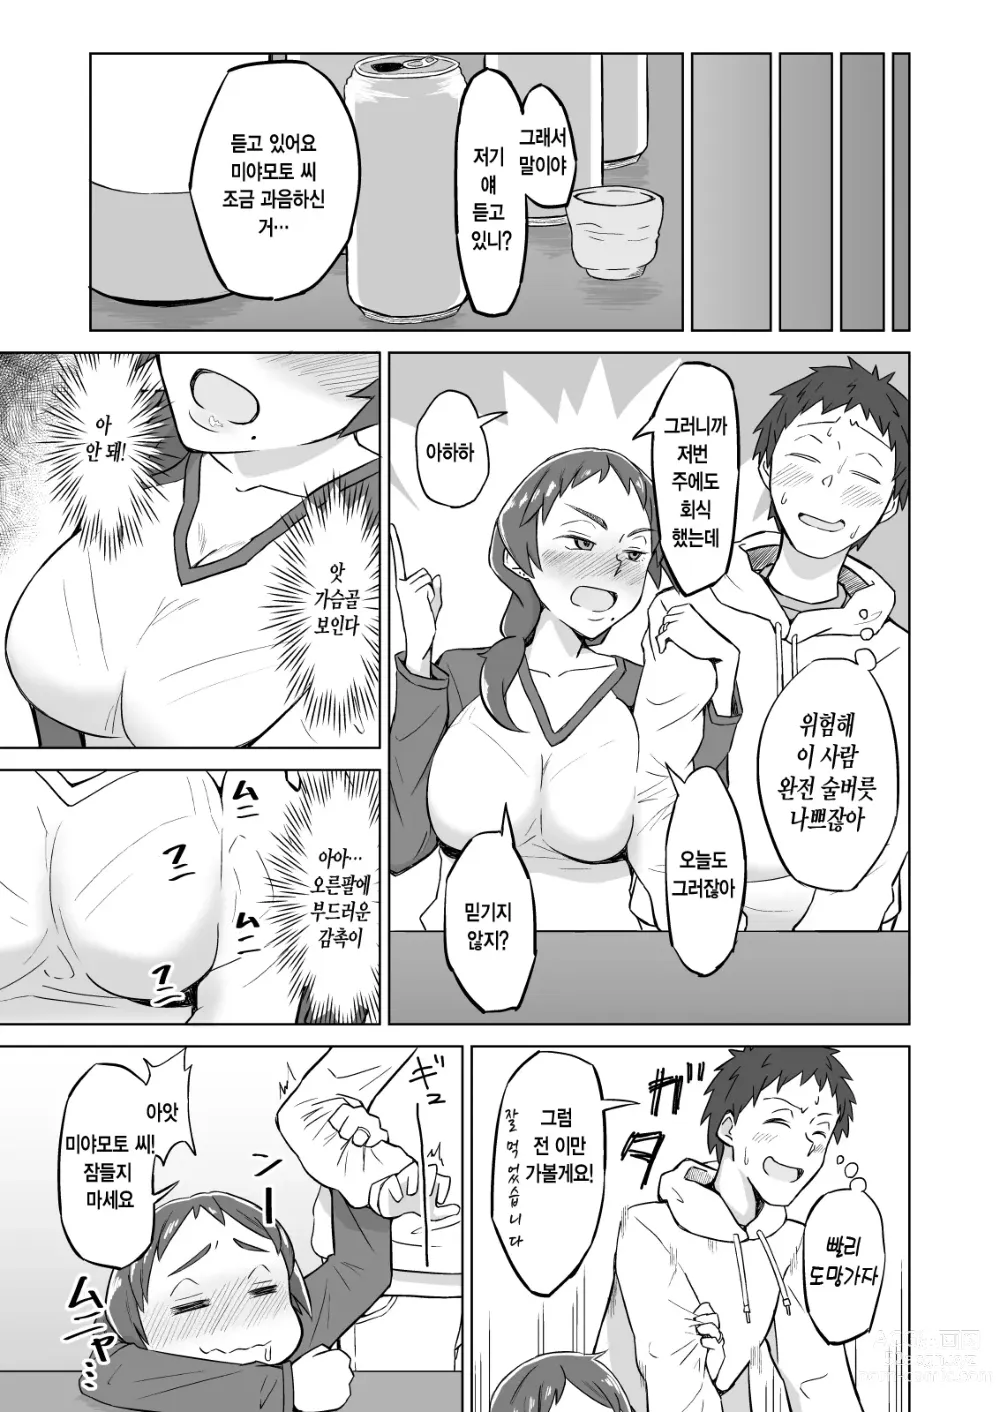 Page 4 of doujinshi 옆집 유부녀에게 저녁식사에 초대받았더니 욕구불만으로 SEX해버린 이야기